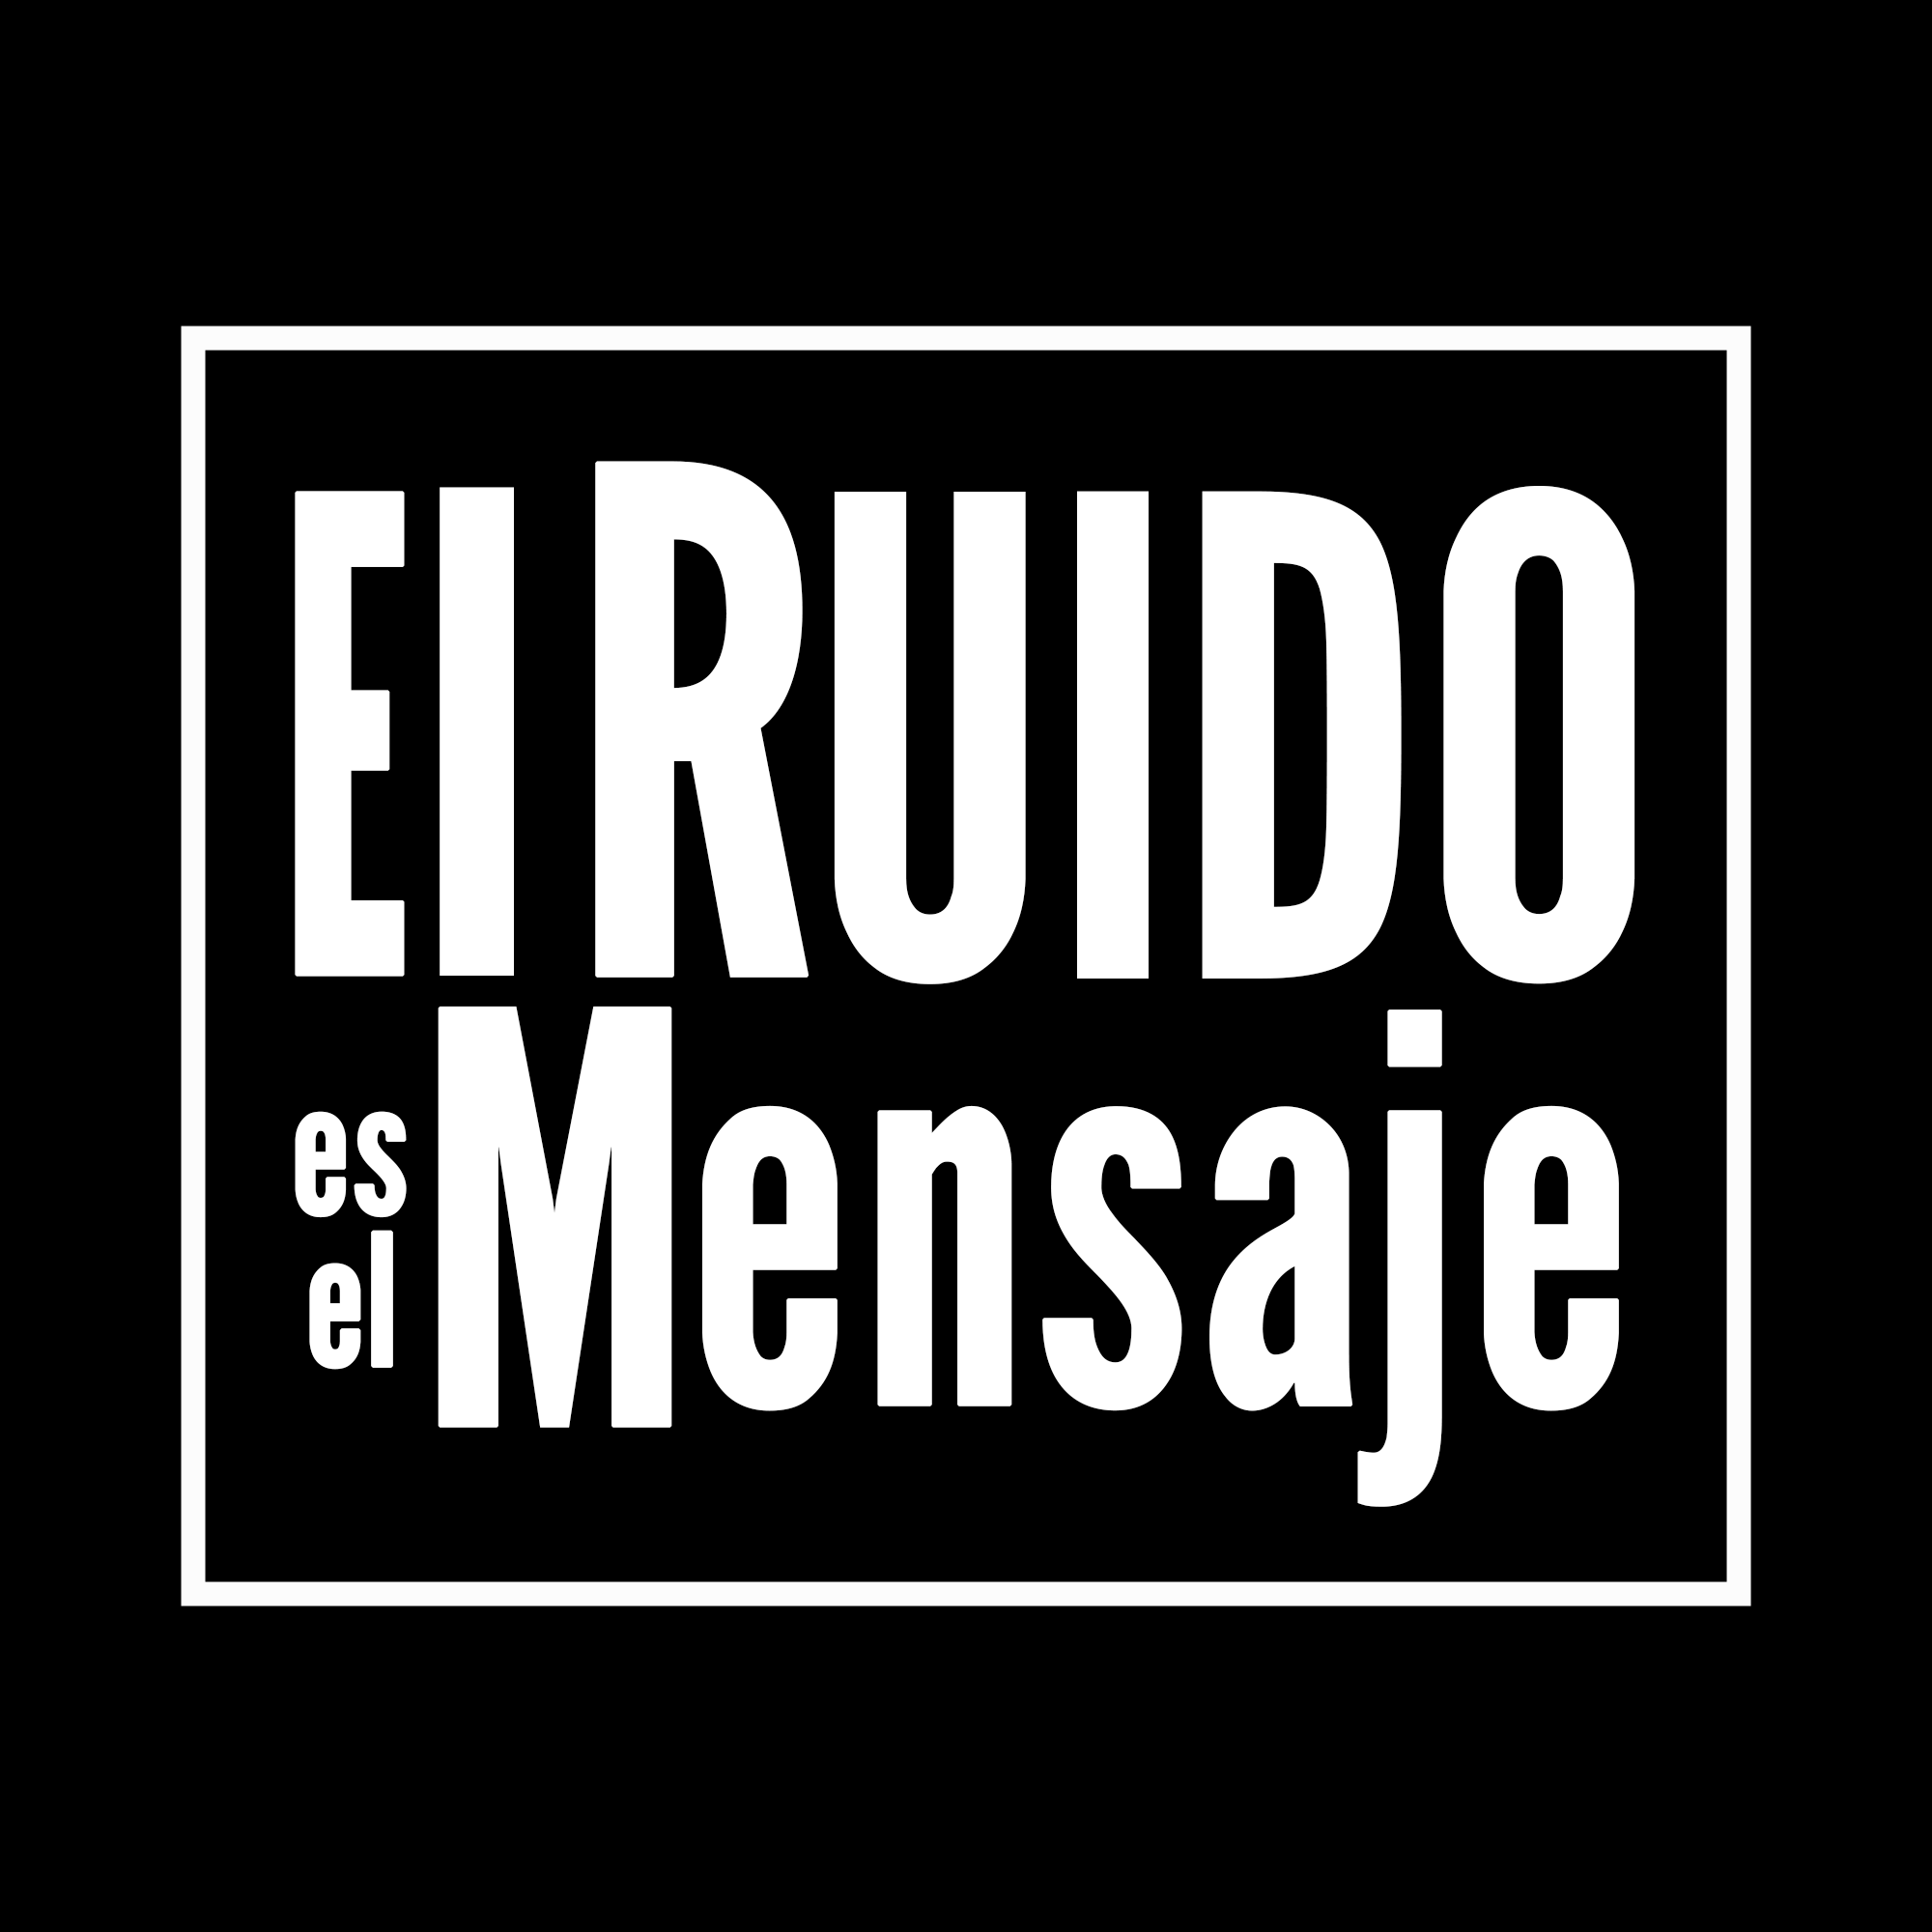 EL-RUIDO-ISOLOGO-2020-NEG